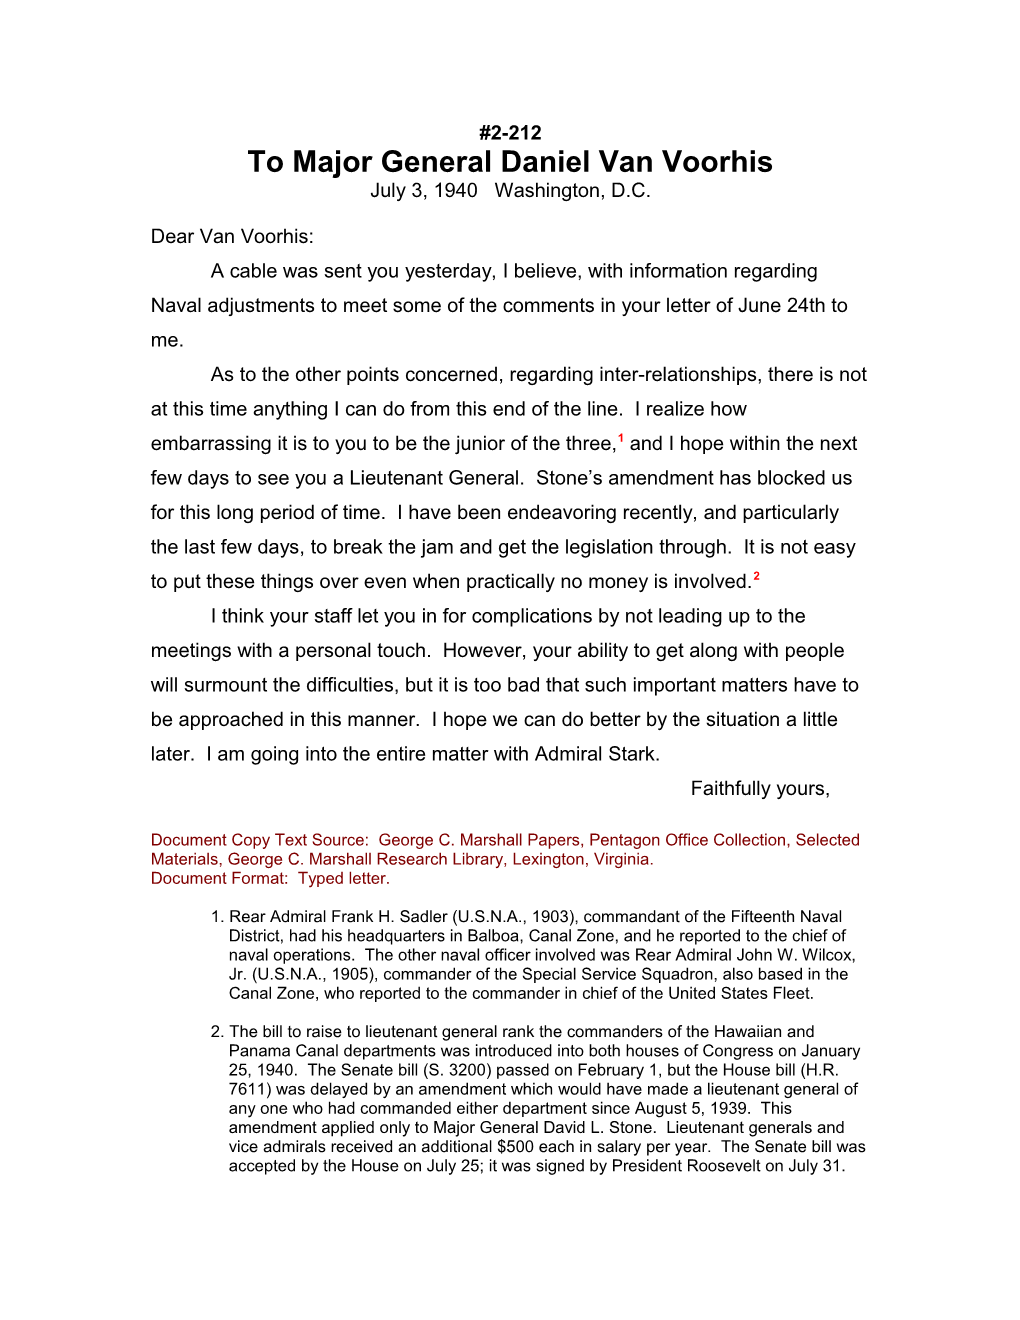 To Major General Daniel Van Voorhis